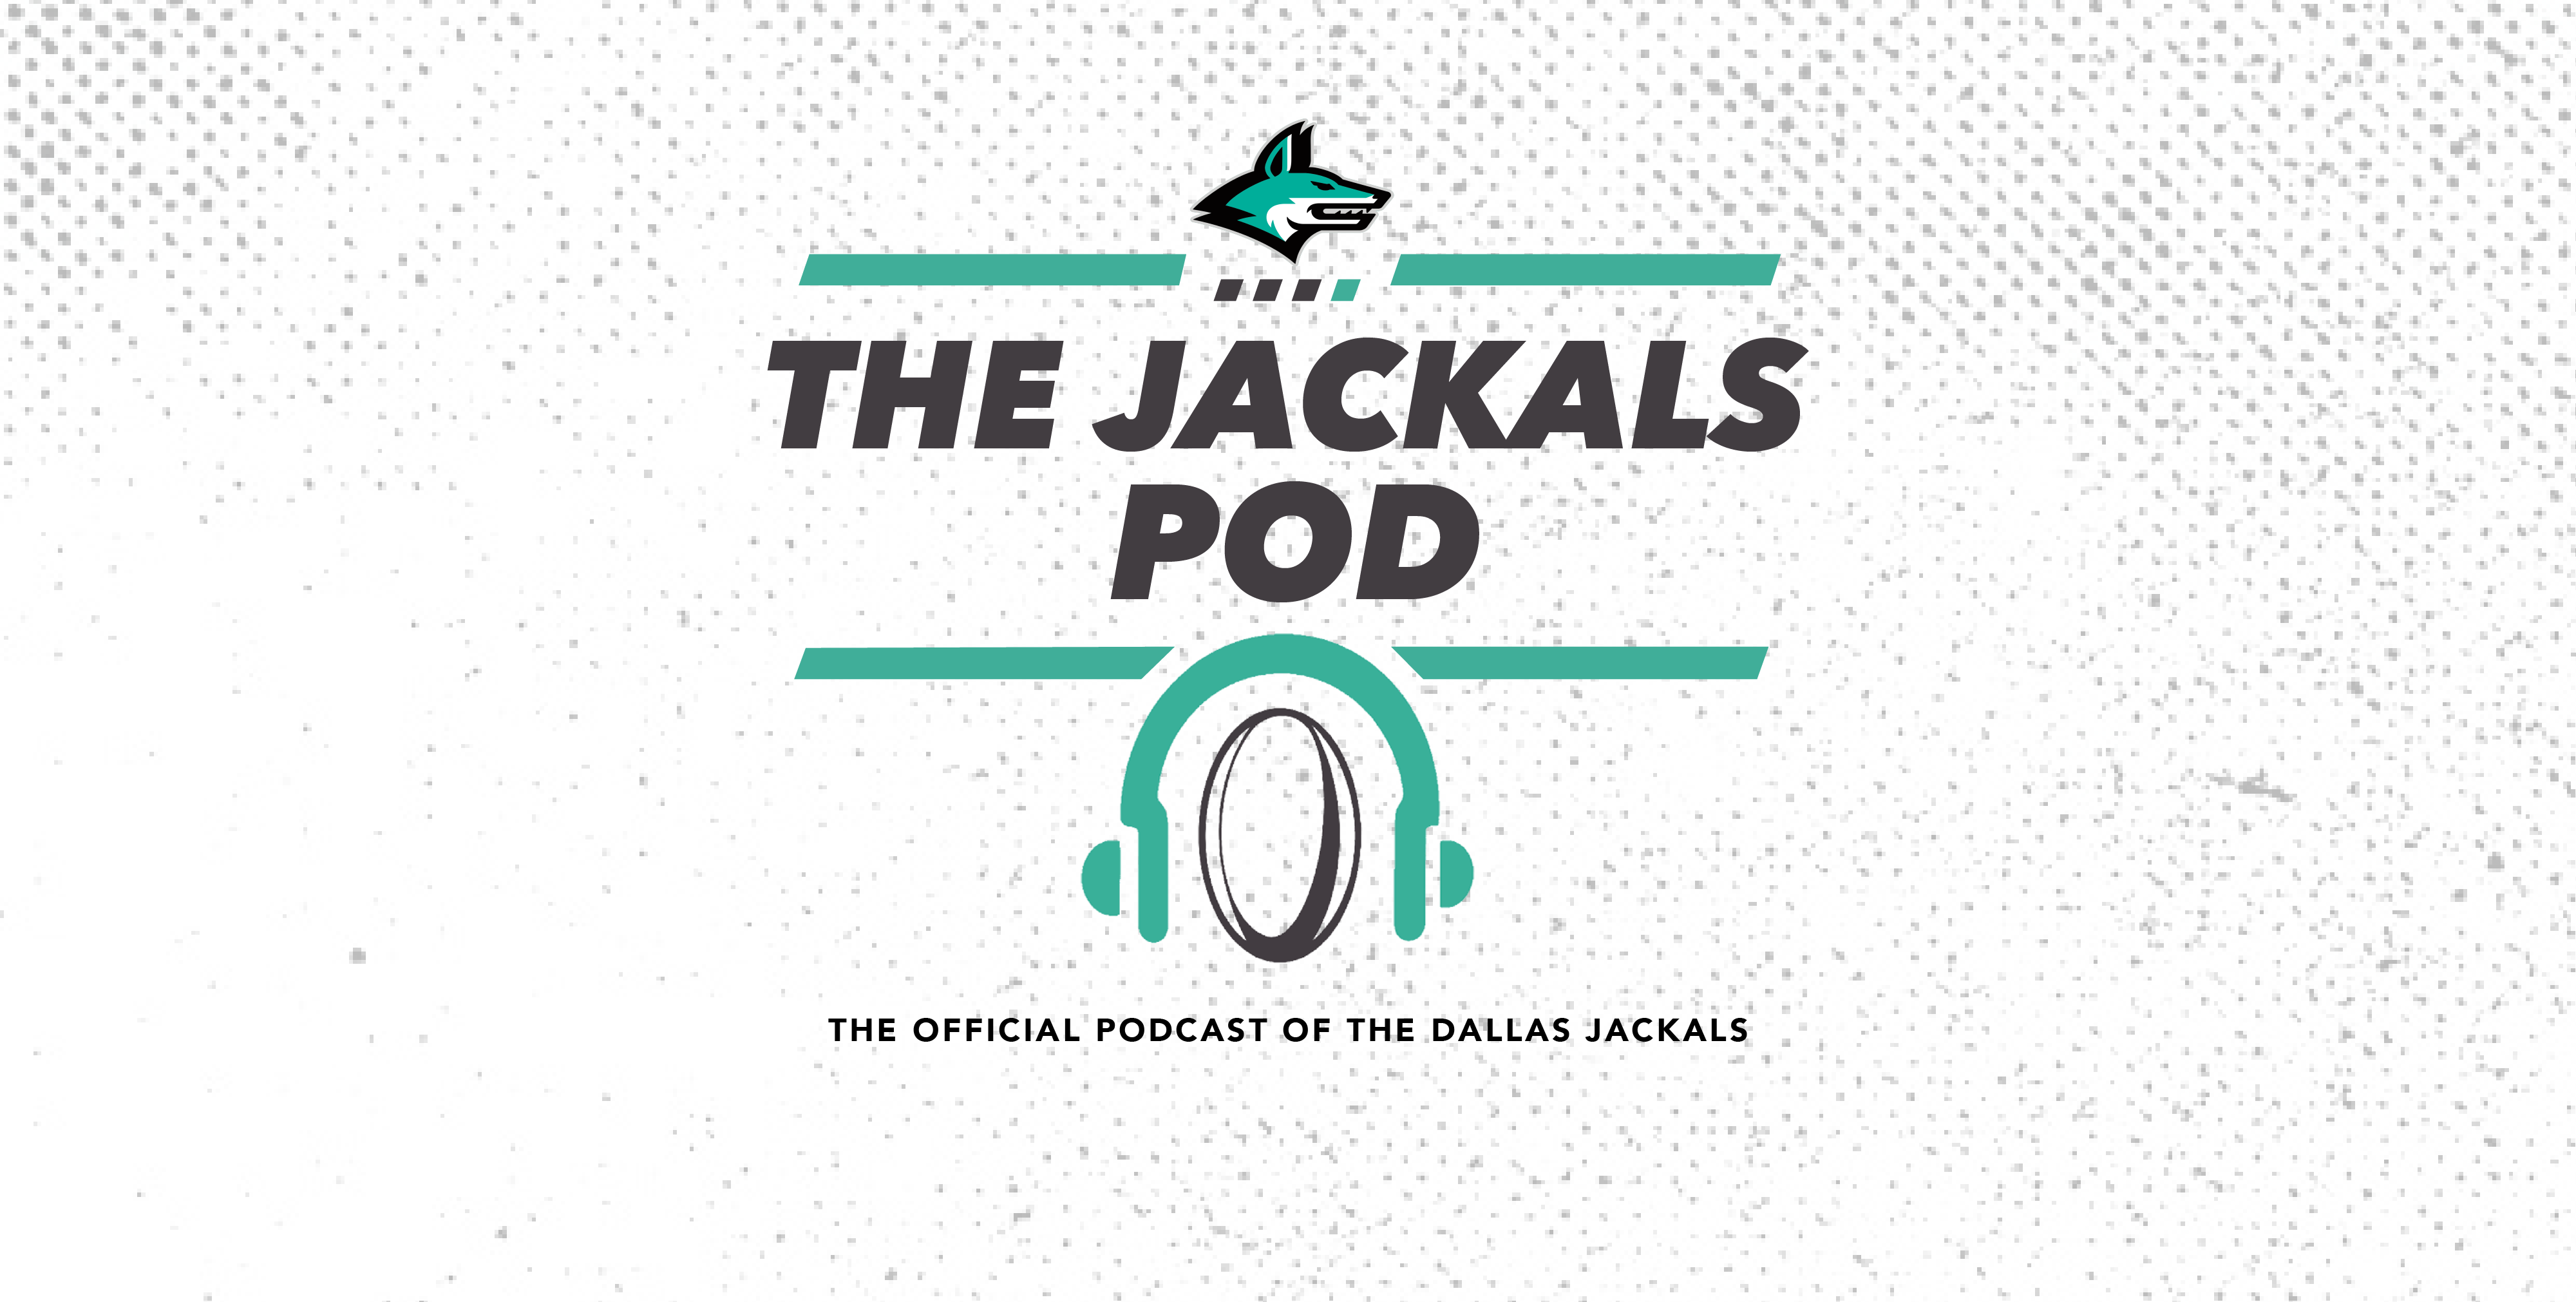 Introducing The Jackals Pod